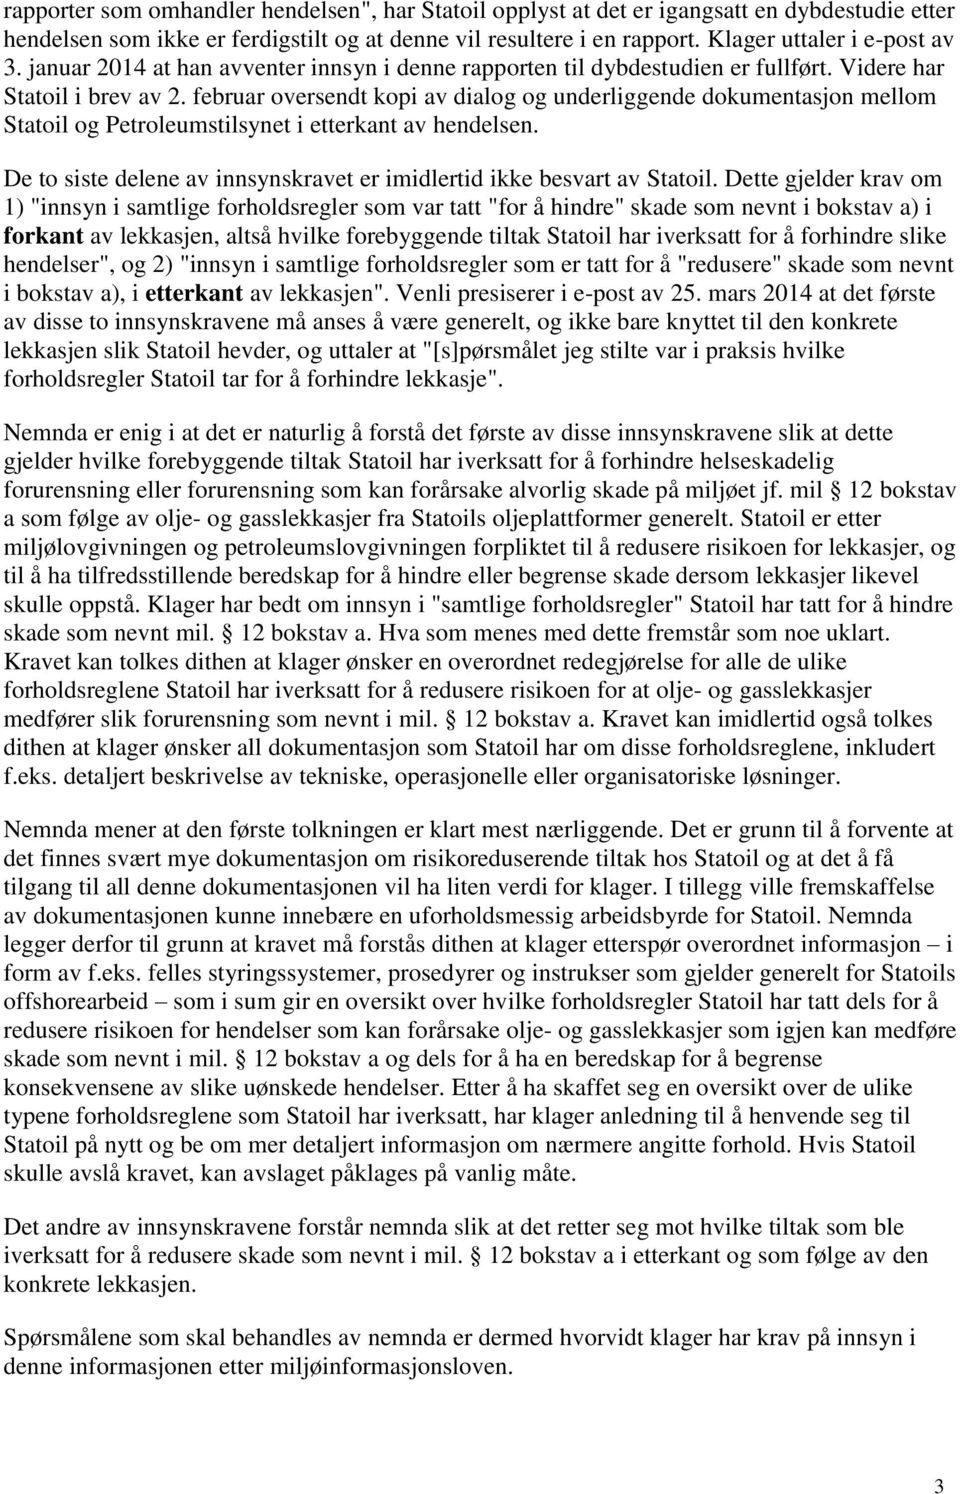 februar oversendt kopi av dialog og underliggende dokumentasjon mellom Statoil og Petroleumstilsynet i etterkant av hendelsen.